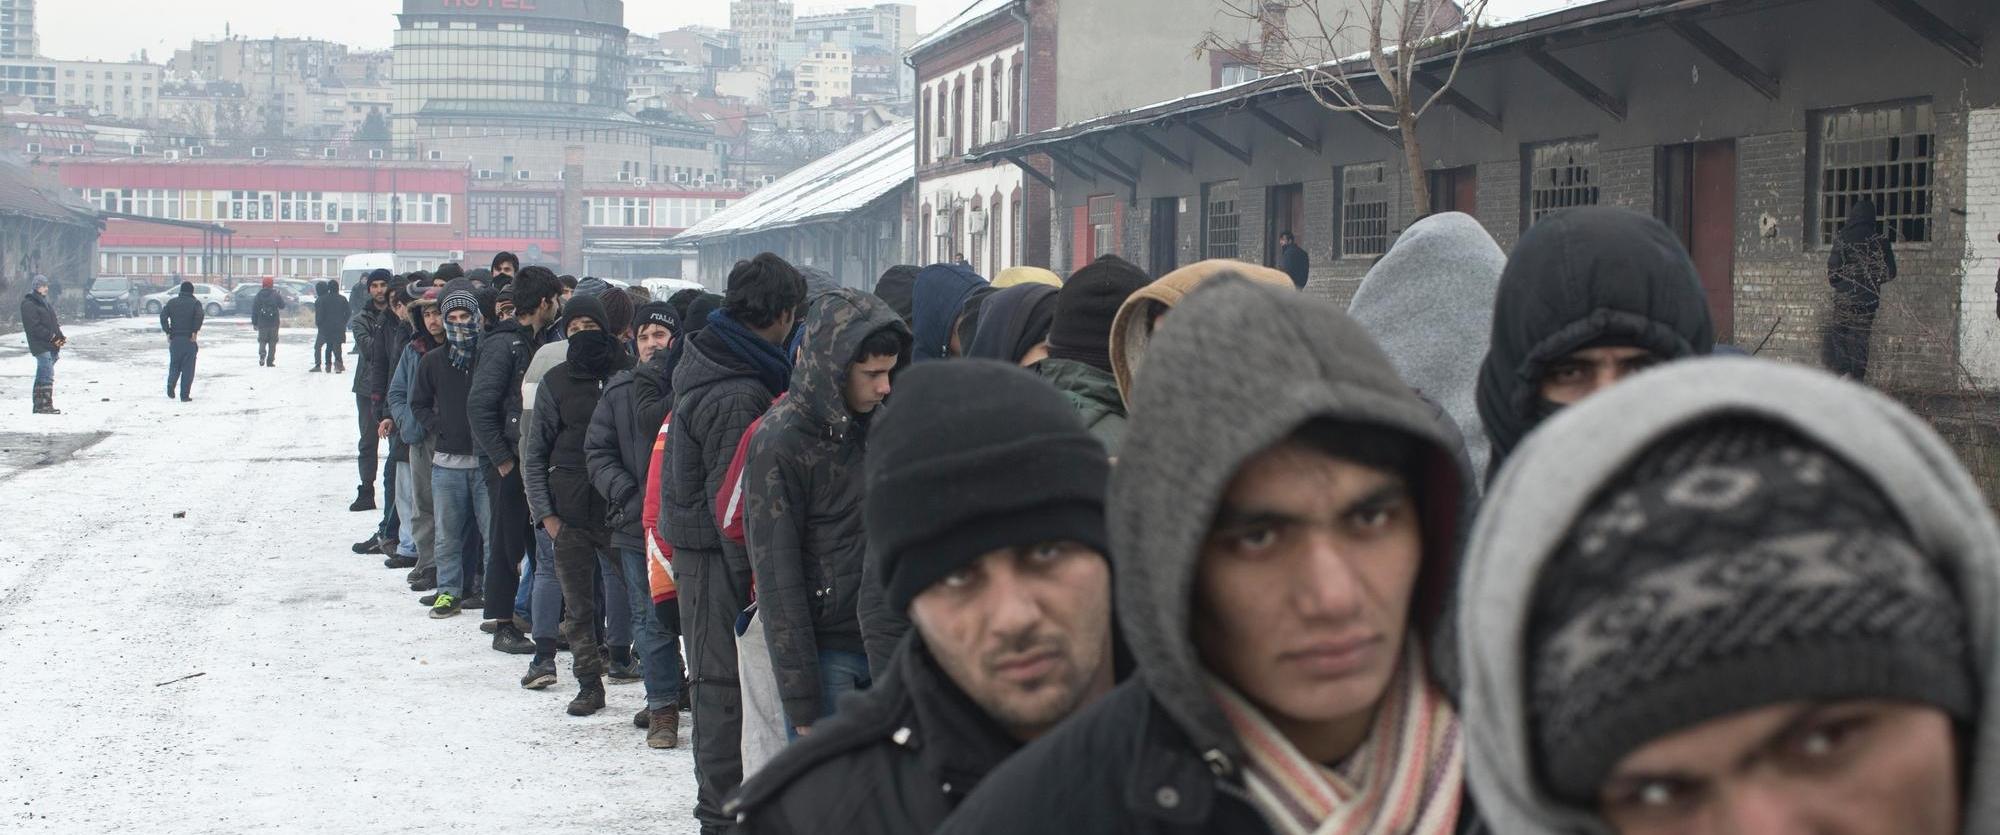 Des réfugiés font la queue pour obtenir de la nourriture dans un entrepôt abandonné utilisé comme abri à Belgrade, en Serbie, en janvier 2017.